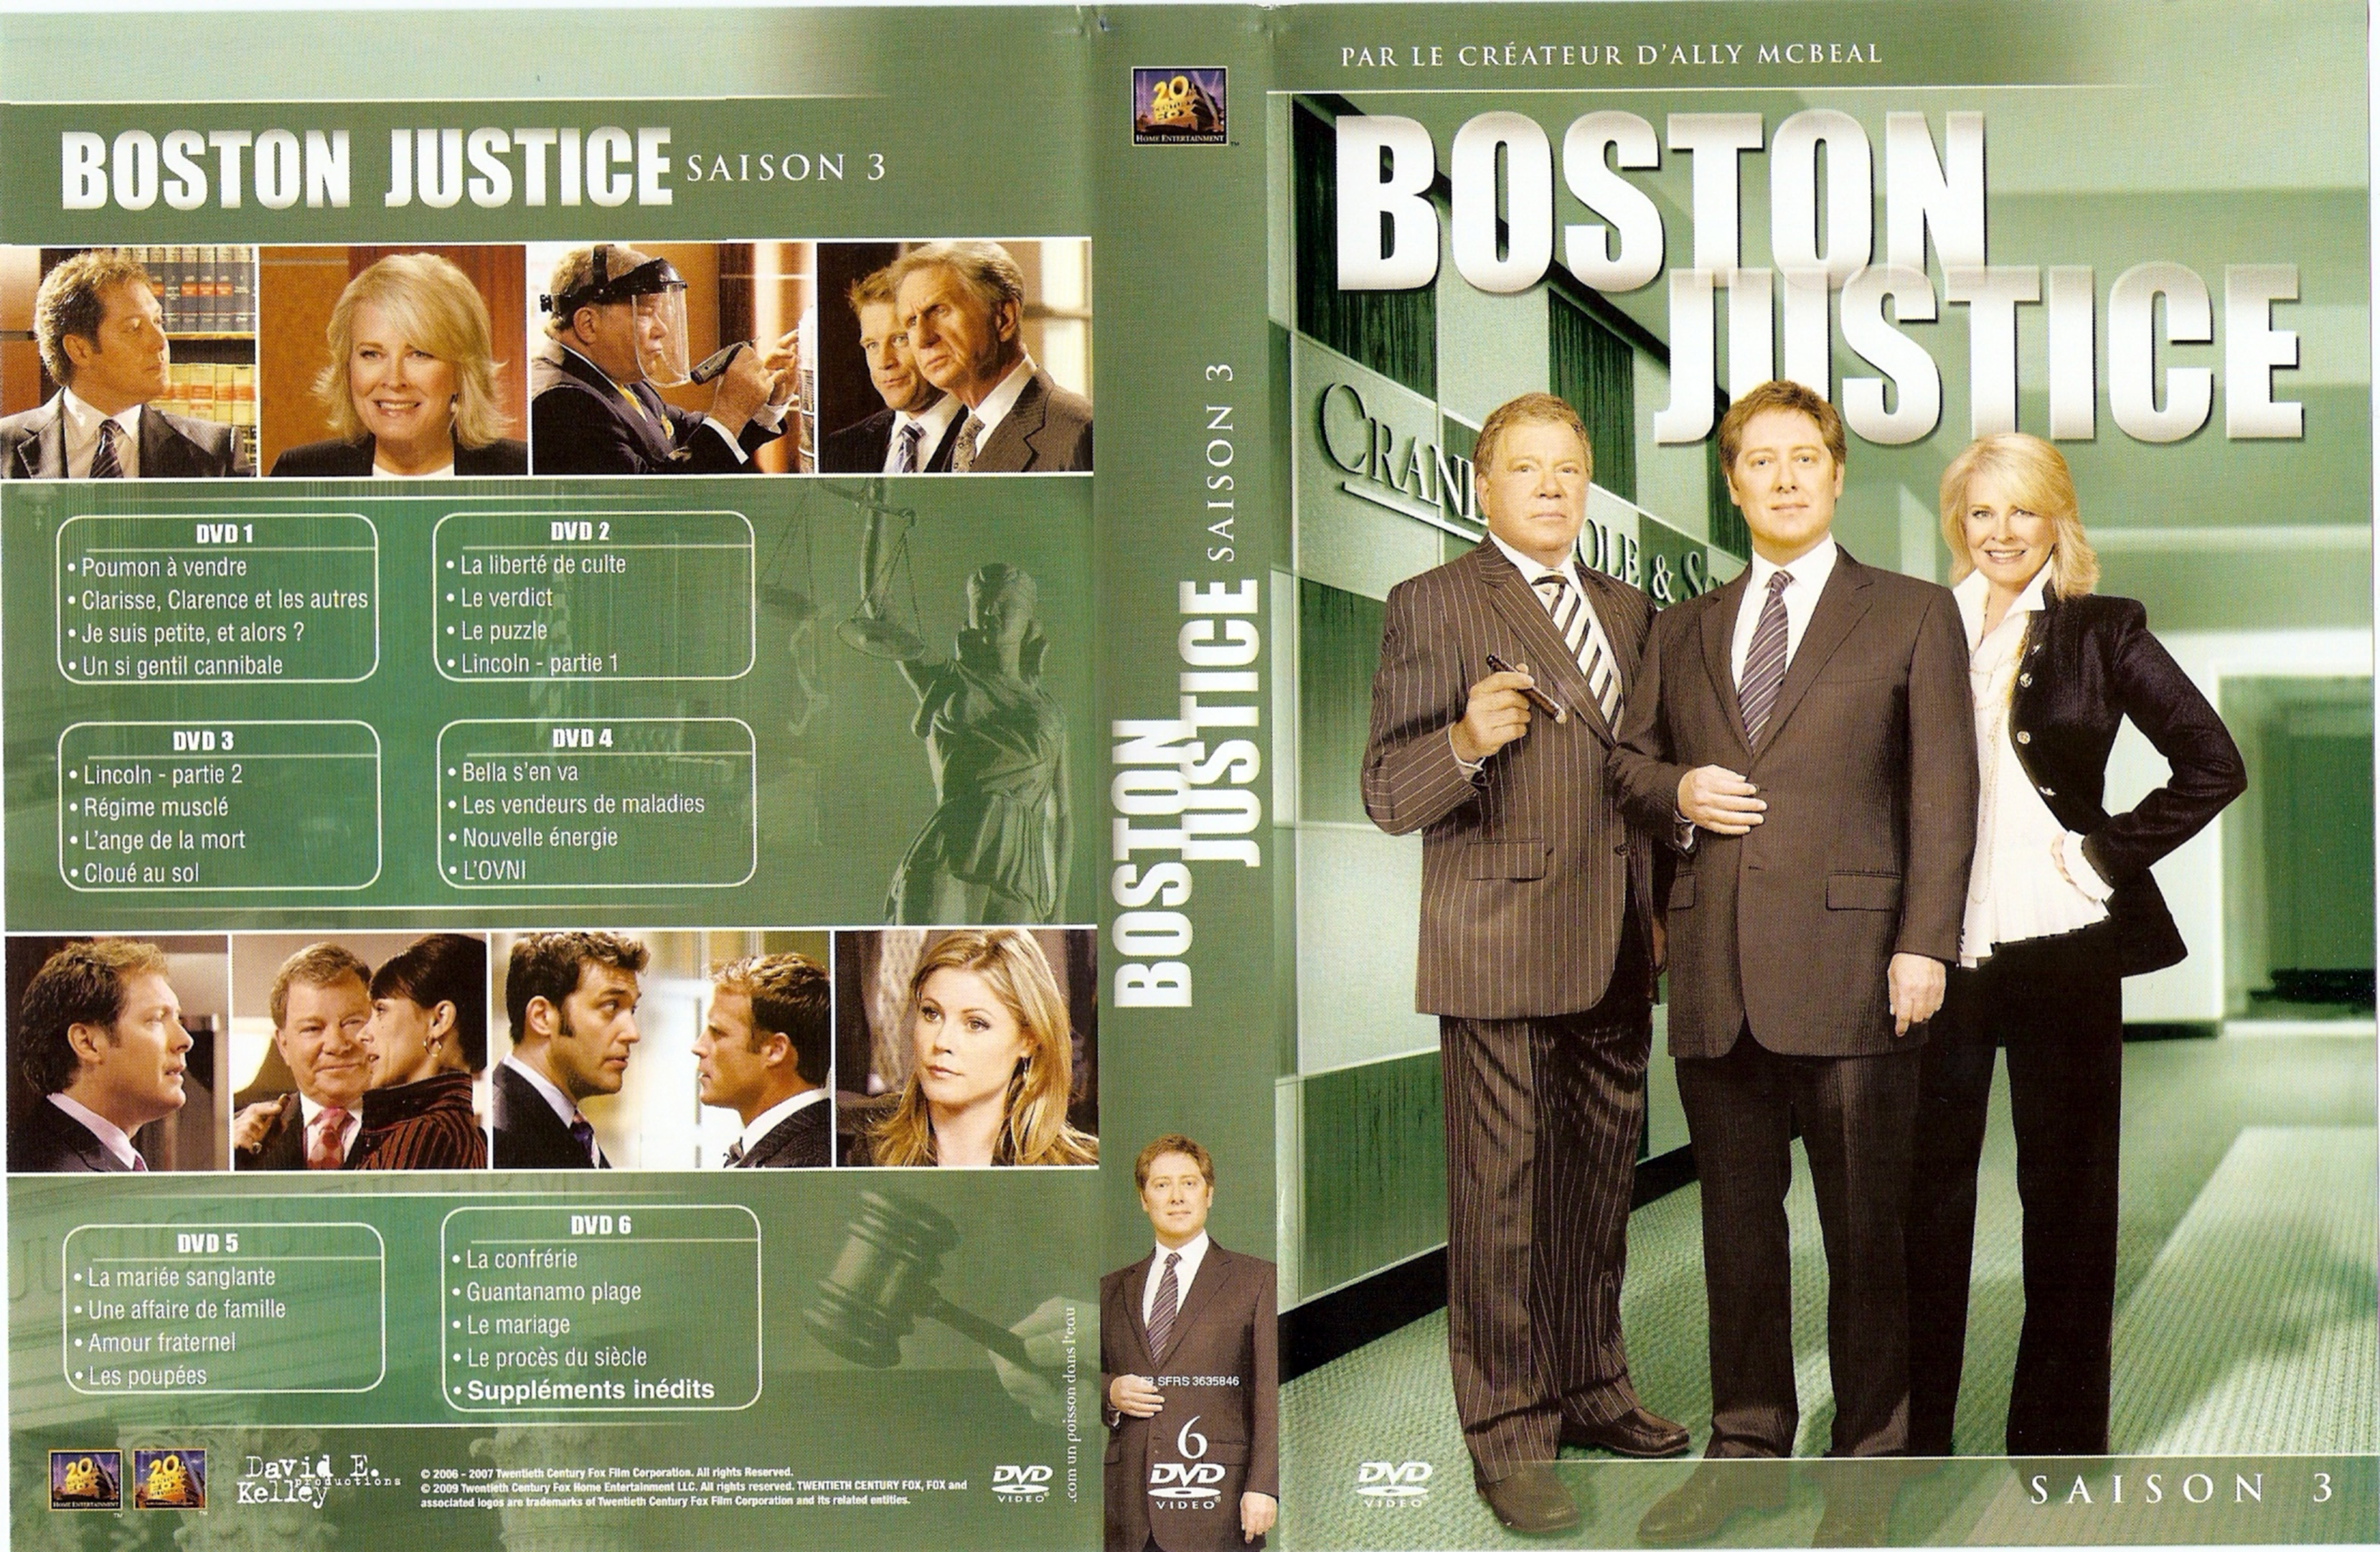 Jaquette DVD Boston justice Saison 3 COFFRET